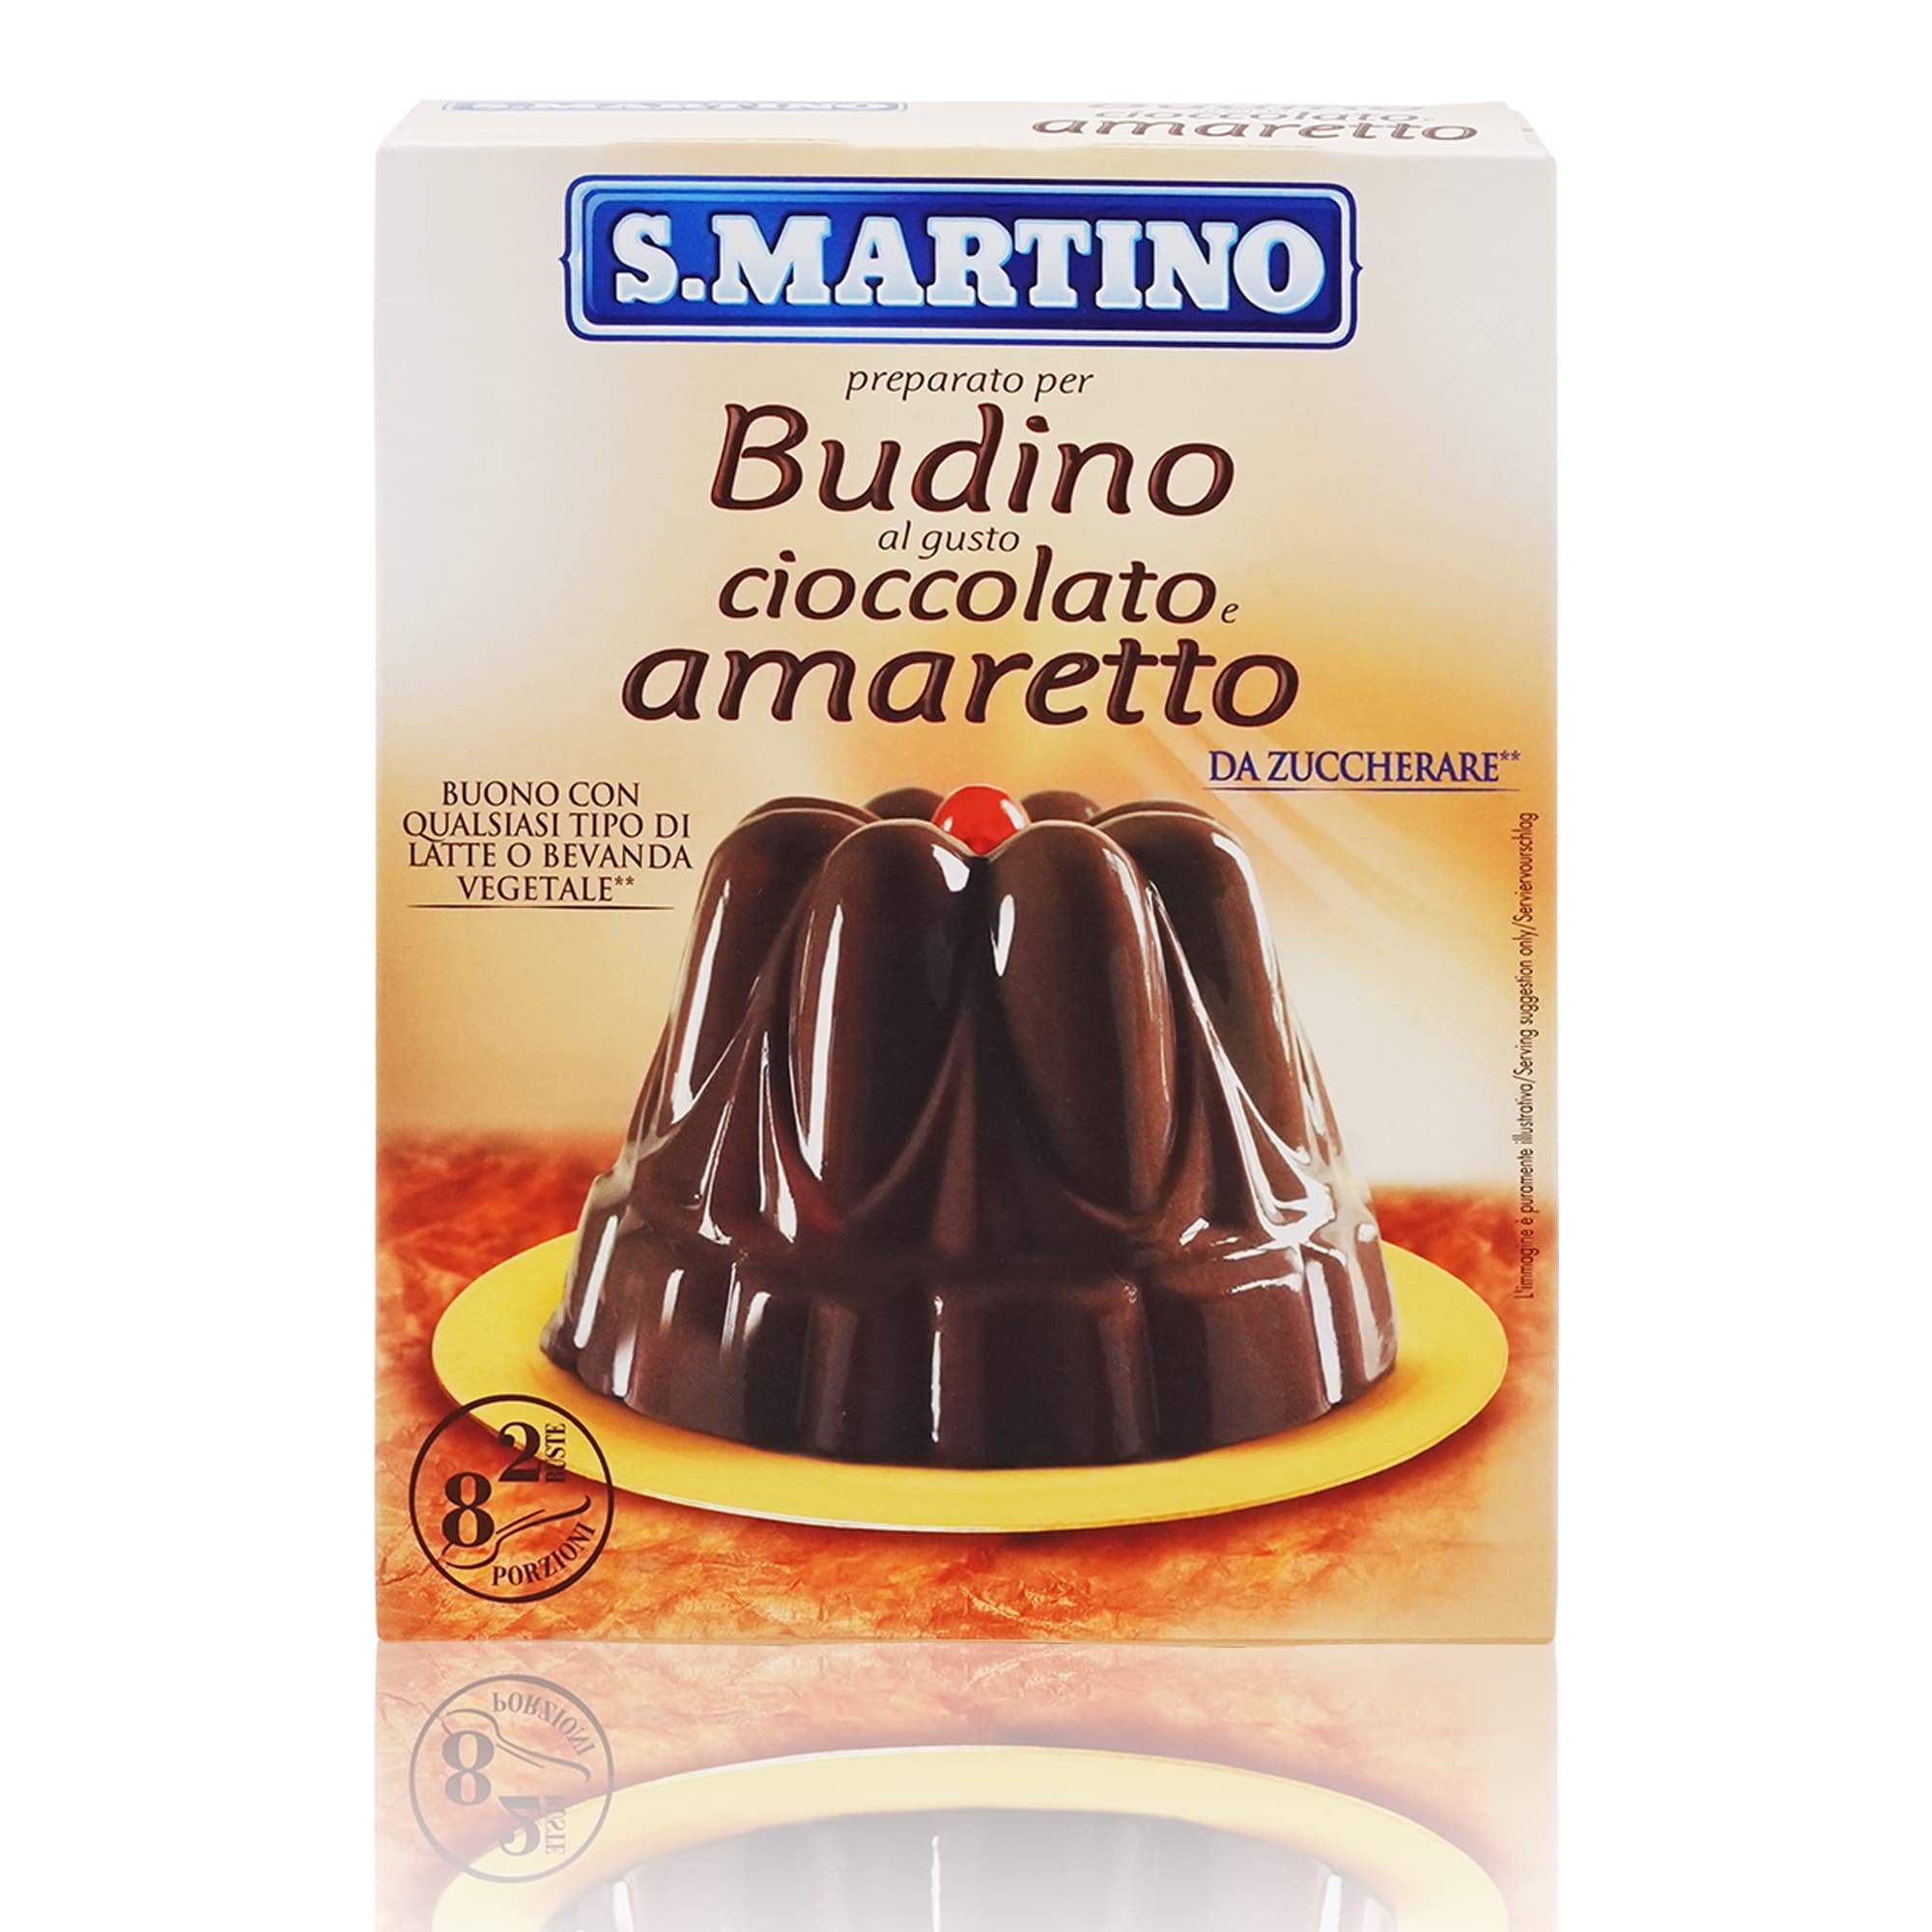 S.MARTINO Preparato Budino ciocc.e amaretto – Backmischung Pudding Schoko – amaretto - 0,096kg - italienisch-einkaufen.de